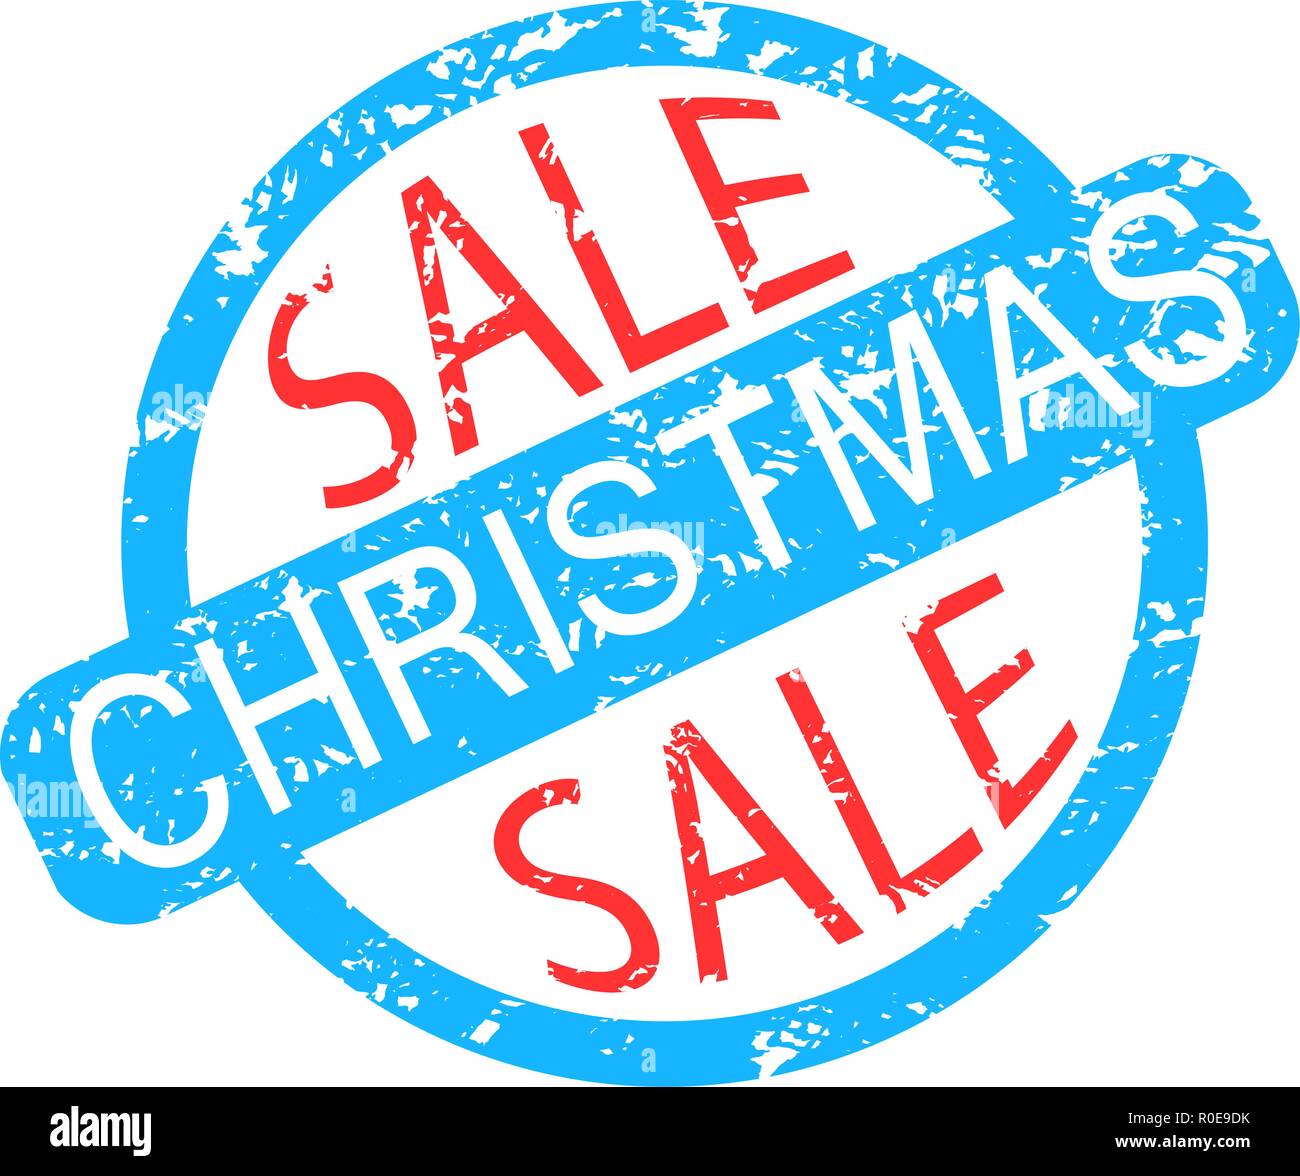 Weihnachten Verkauf Stempel farbig auf Weiß isoliert. Vektor frohe Weihnachten, xmas Verkauf und Rabatt Abbildung Stock Vektor